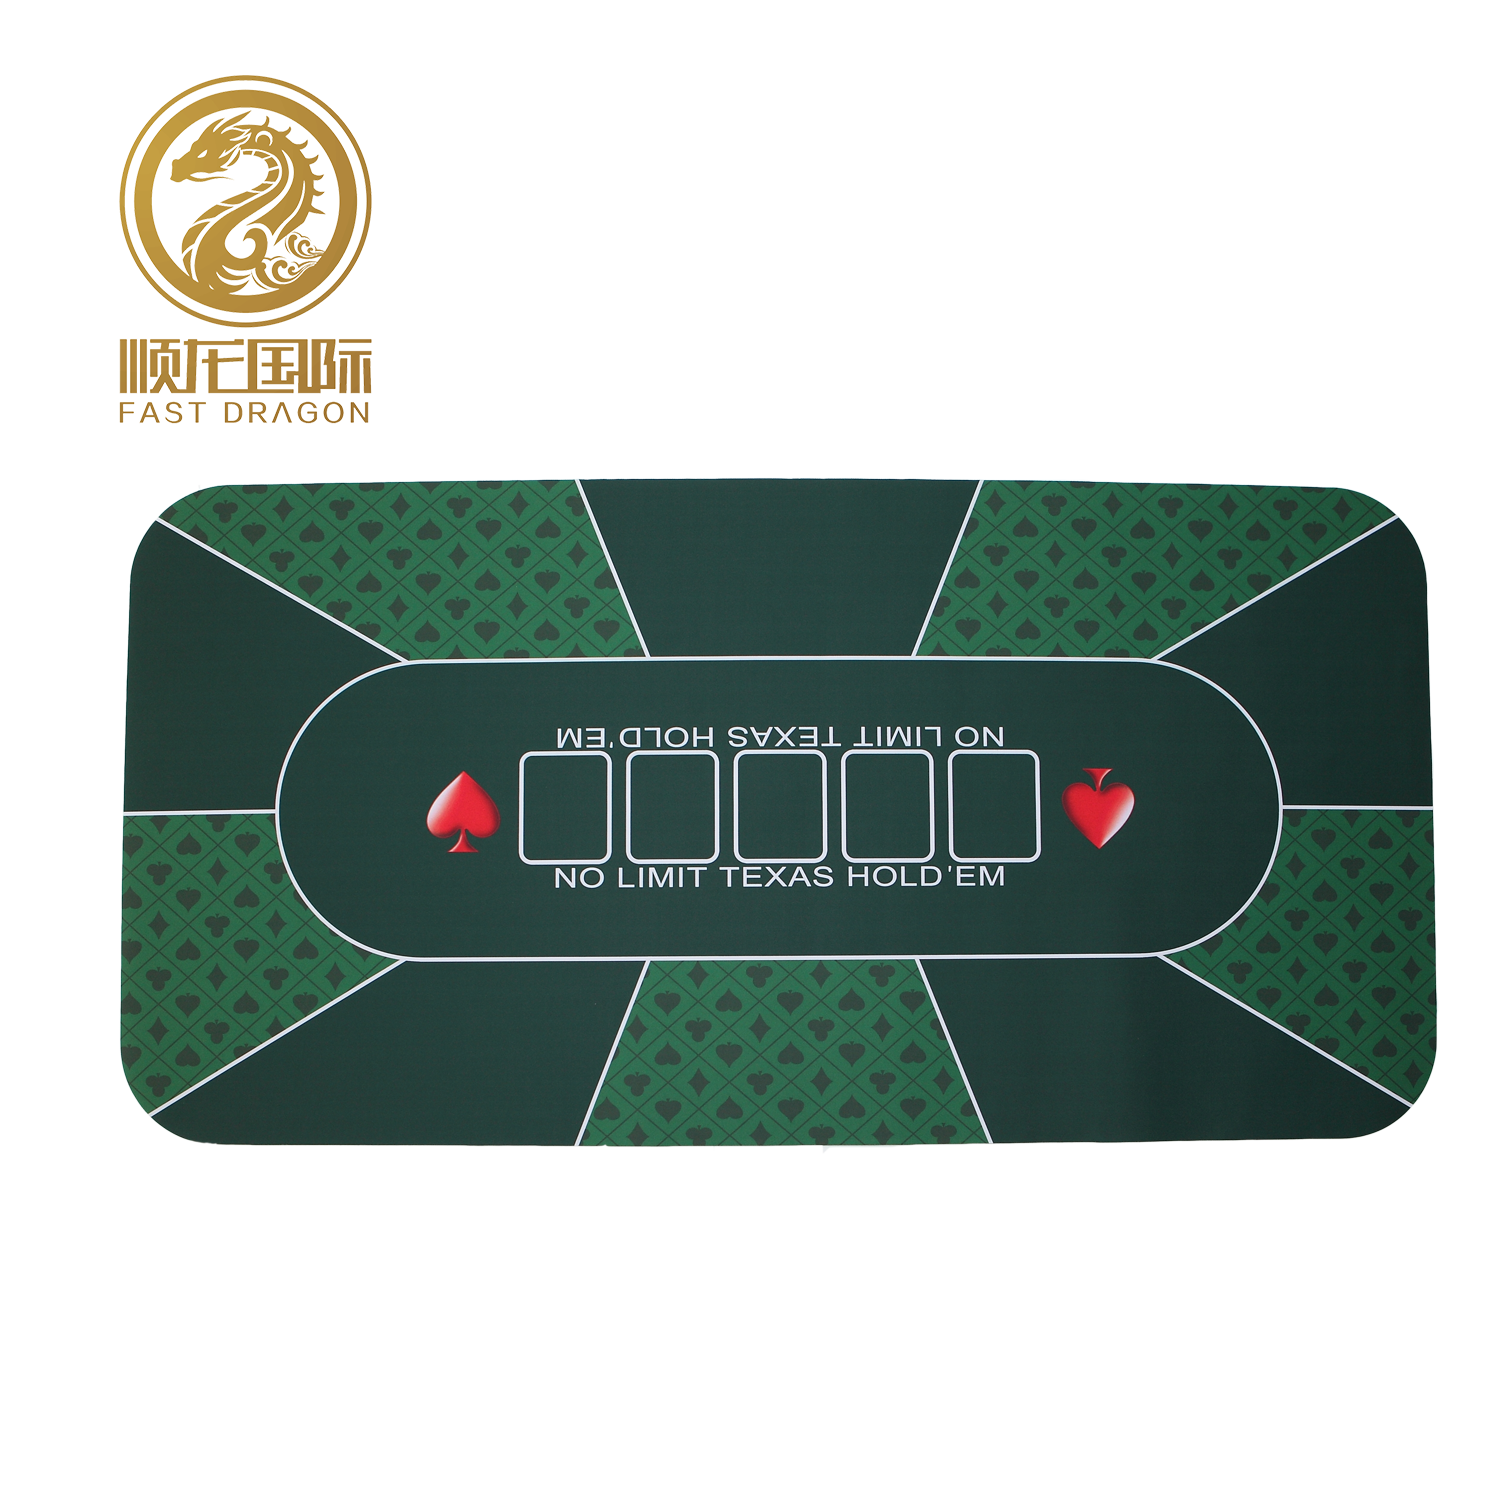 DRA-PM1092 Rubber Poker Mat for Texas Hold′em Casino Poker Table Mat